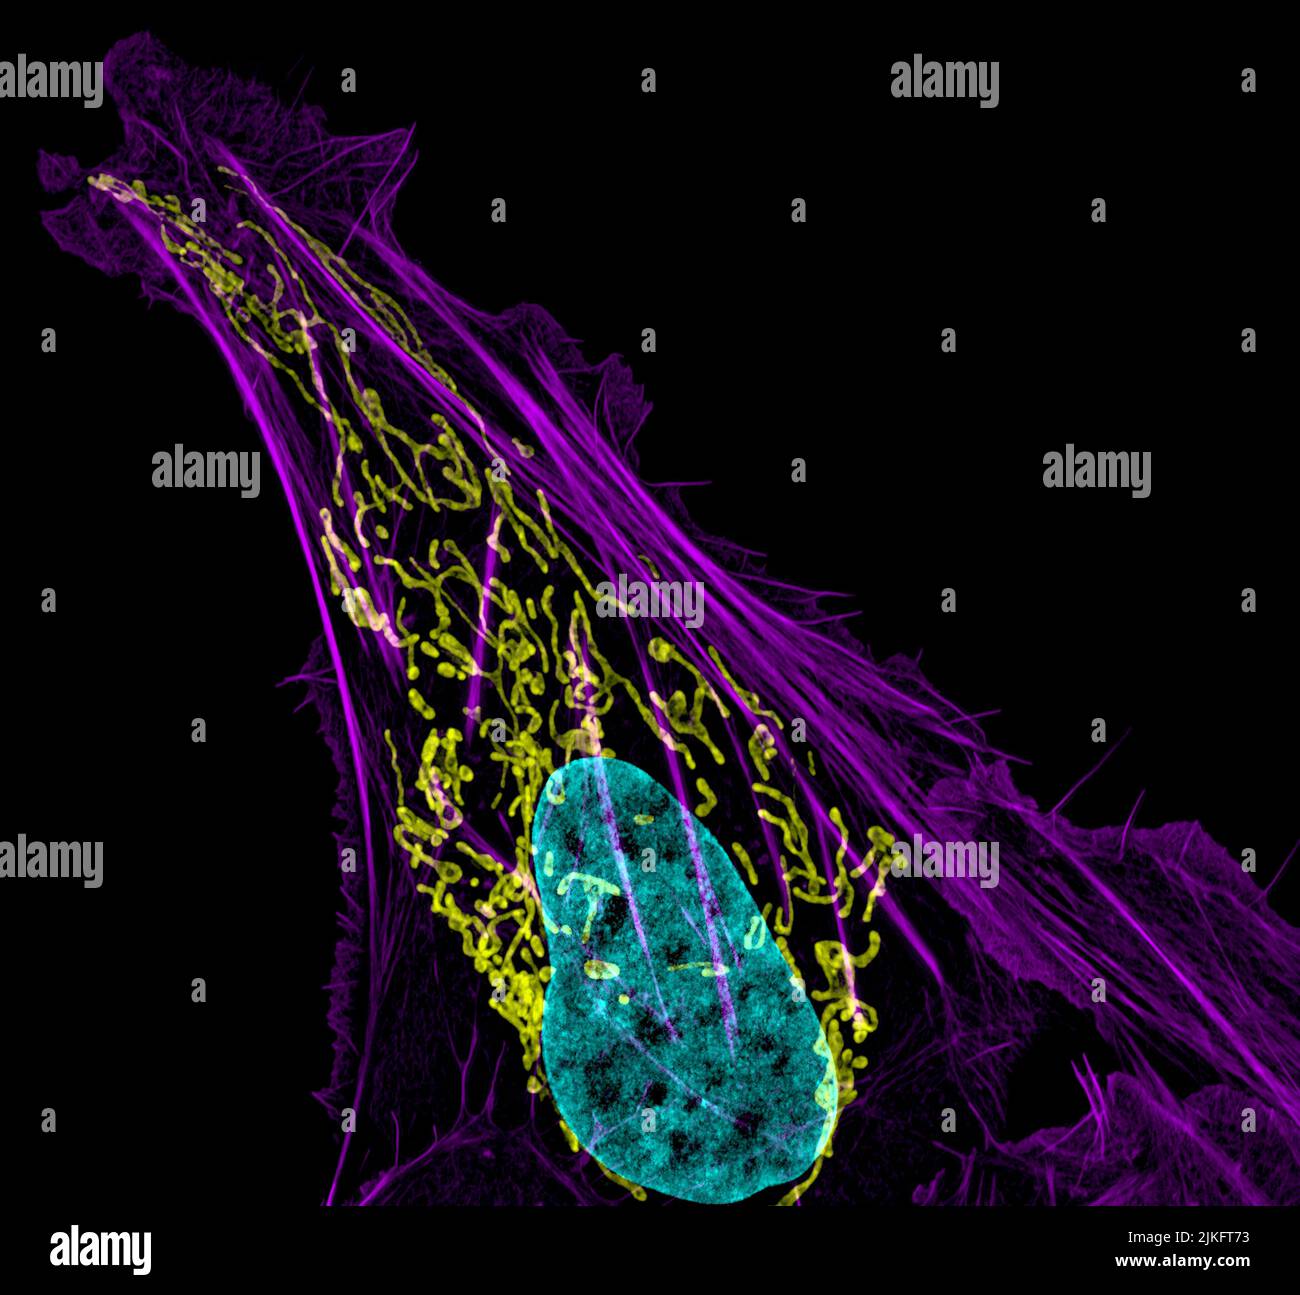 Dieses Bild zeigt eine Osteosarkomzelle mit DNA in Blau, Energiefabriken (Mitochondrien) in Gelb und Aktinfilamenten, Teil des Zellskeletts, in Violett. Das Osteosarkom, eines der seltenen Krebsarten, die in den Knochen entstehen, ist extrem selten, wobei in den Vereinigten Staaten jedes Jahr weniger als tausend neue Fälle ausgelöst werden. Stockfoto